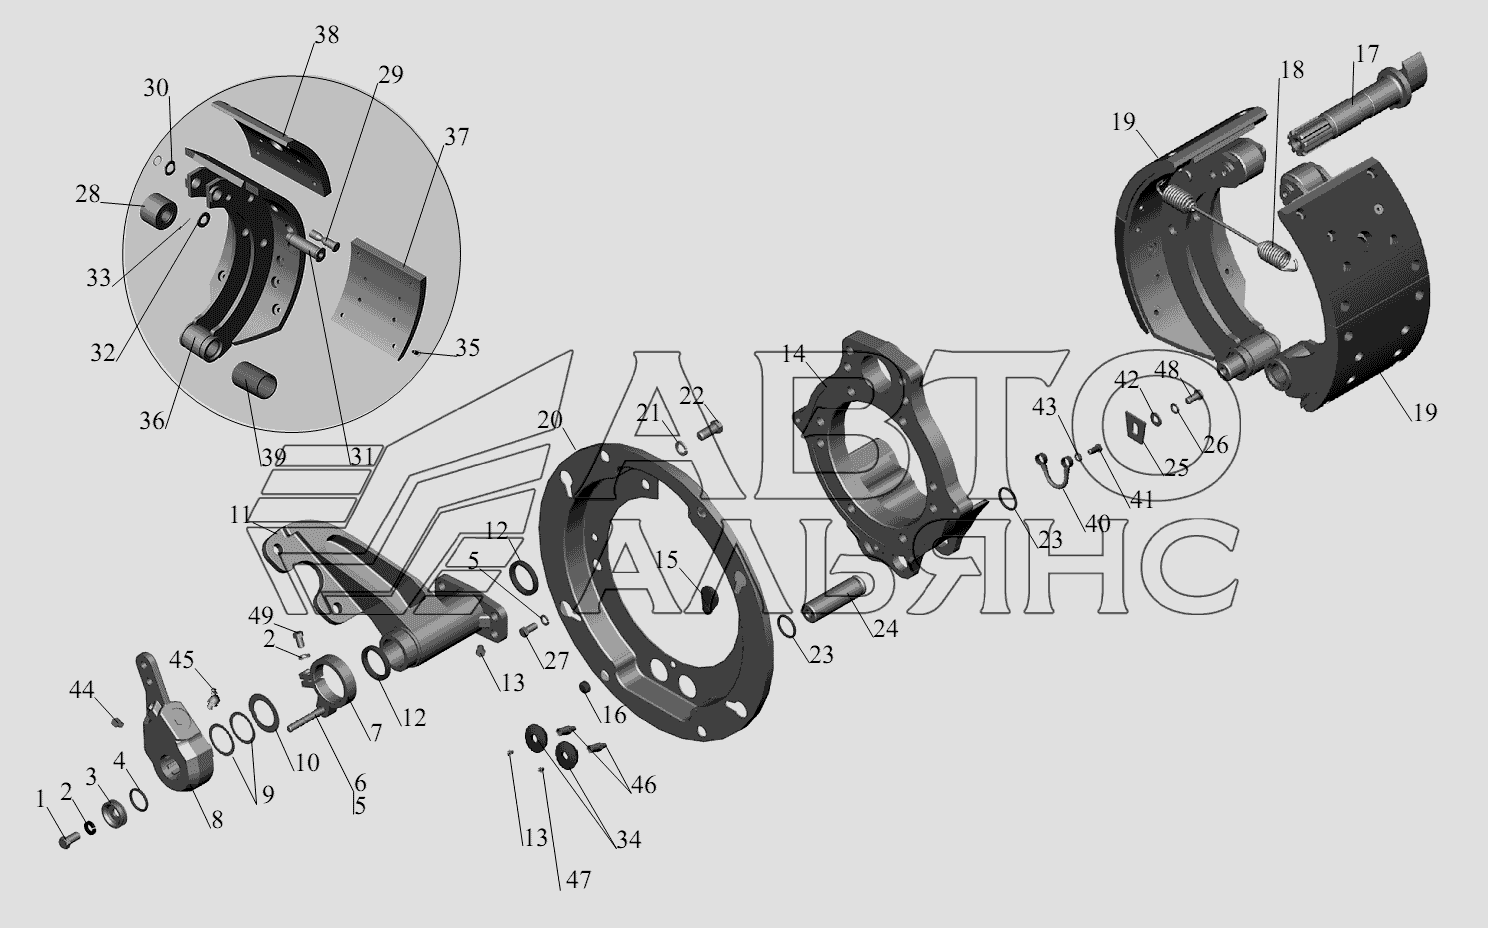 Тормозной механизм передних колес 152-3501004 (152-3501005) МАЗ-6422, 5432